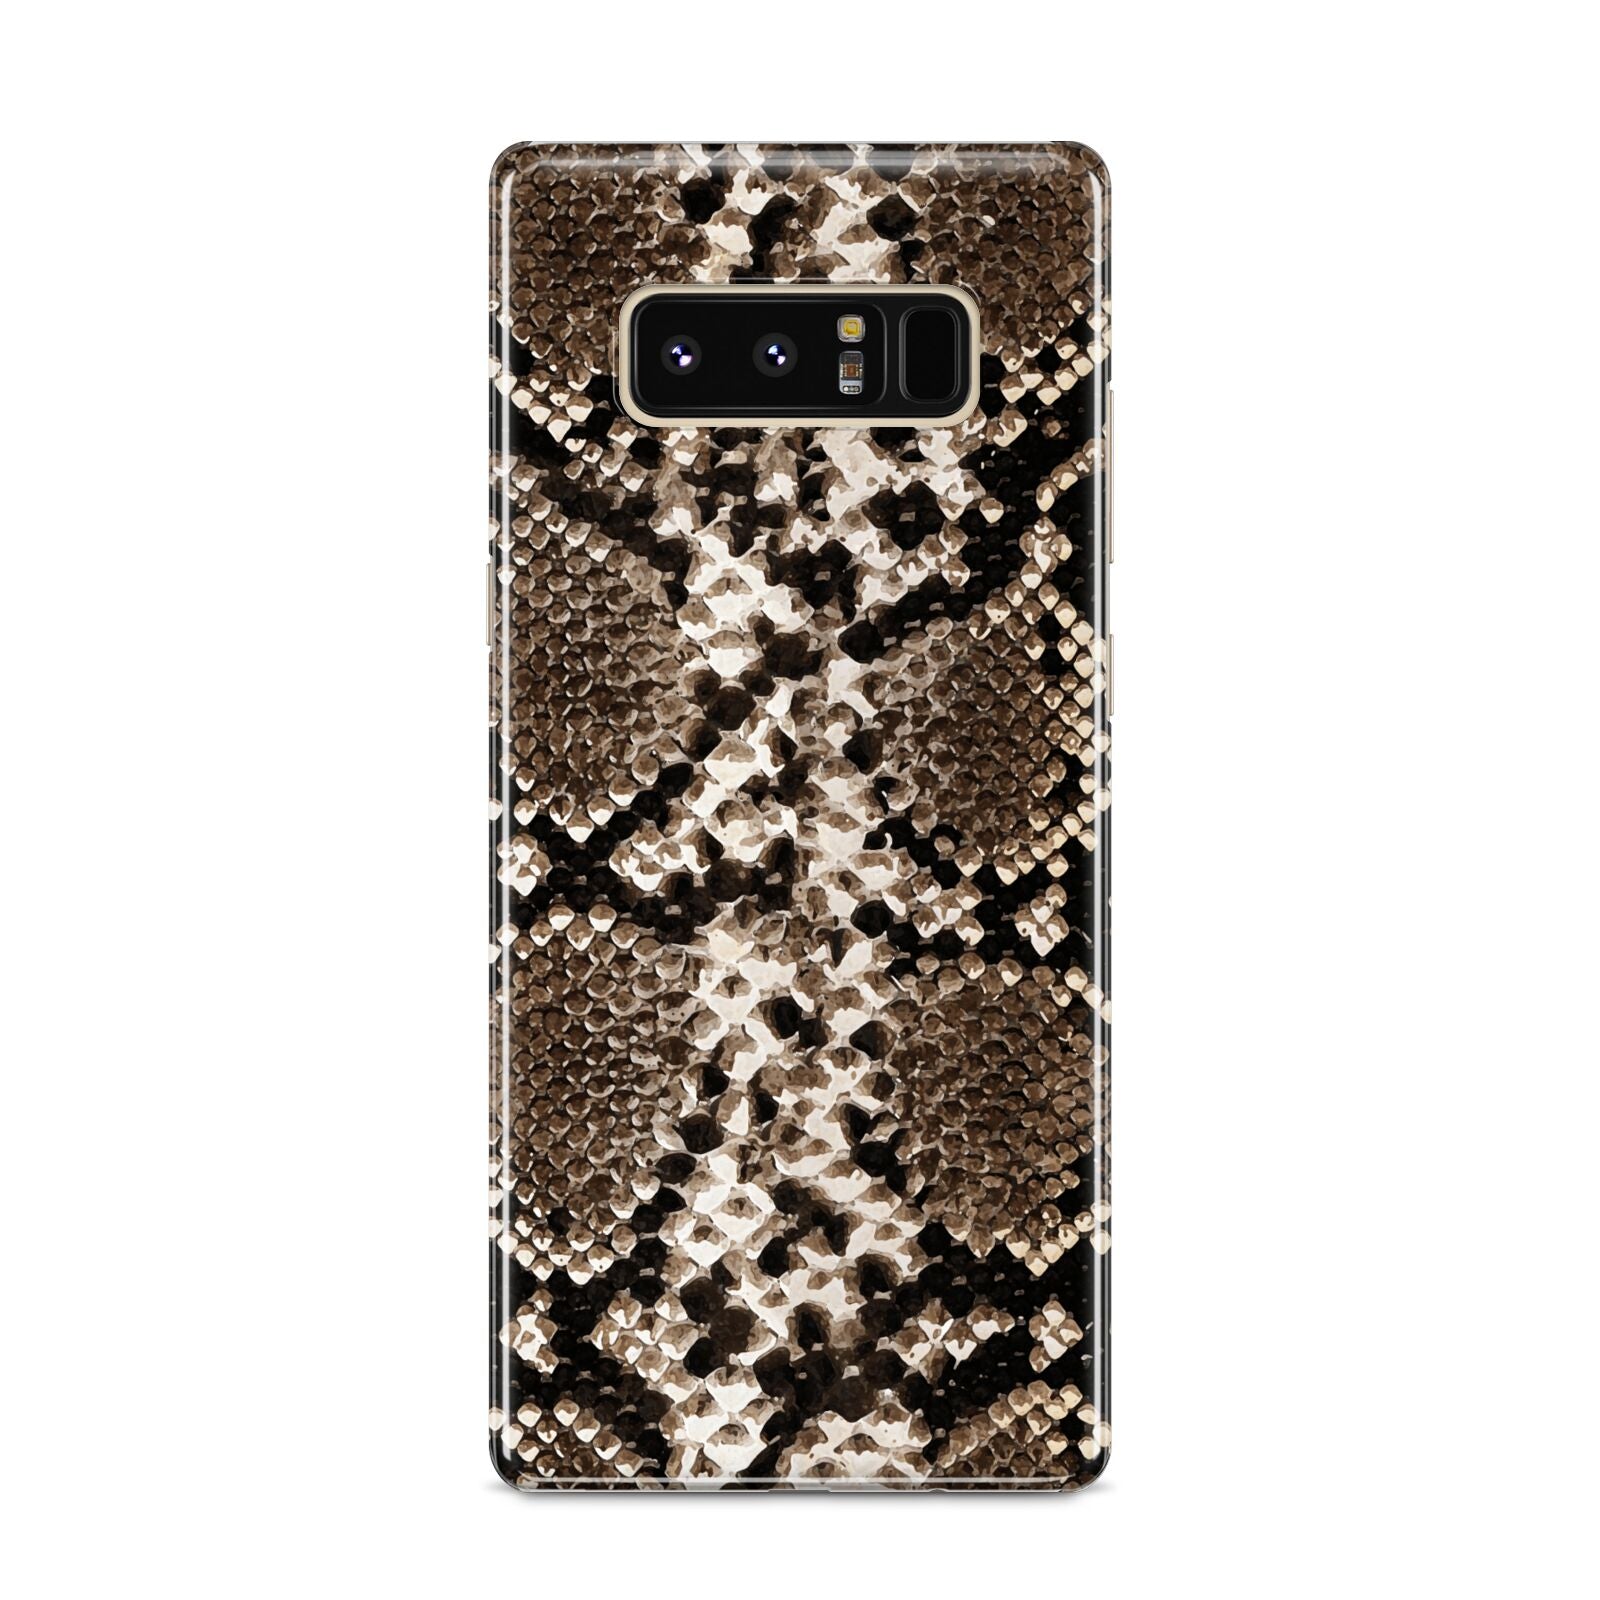 Snakeskin Pattern Samsung Galaxy S8 Case